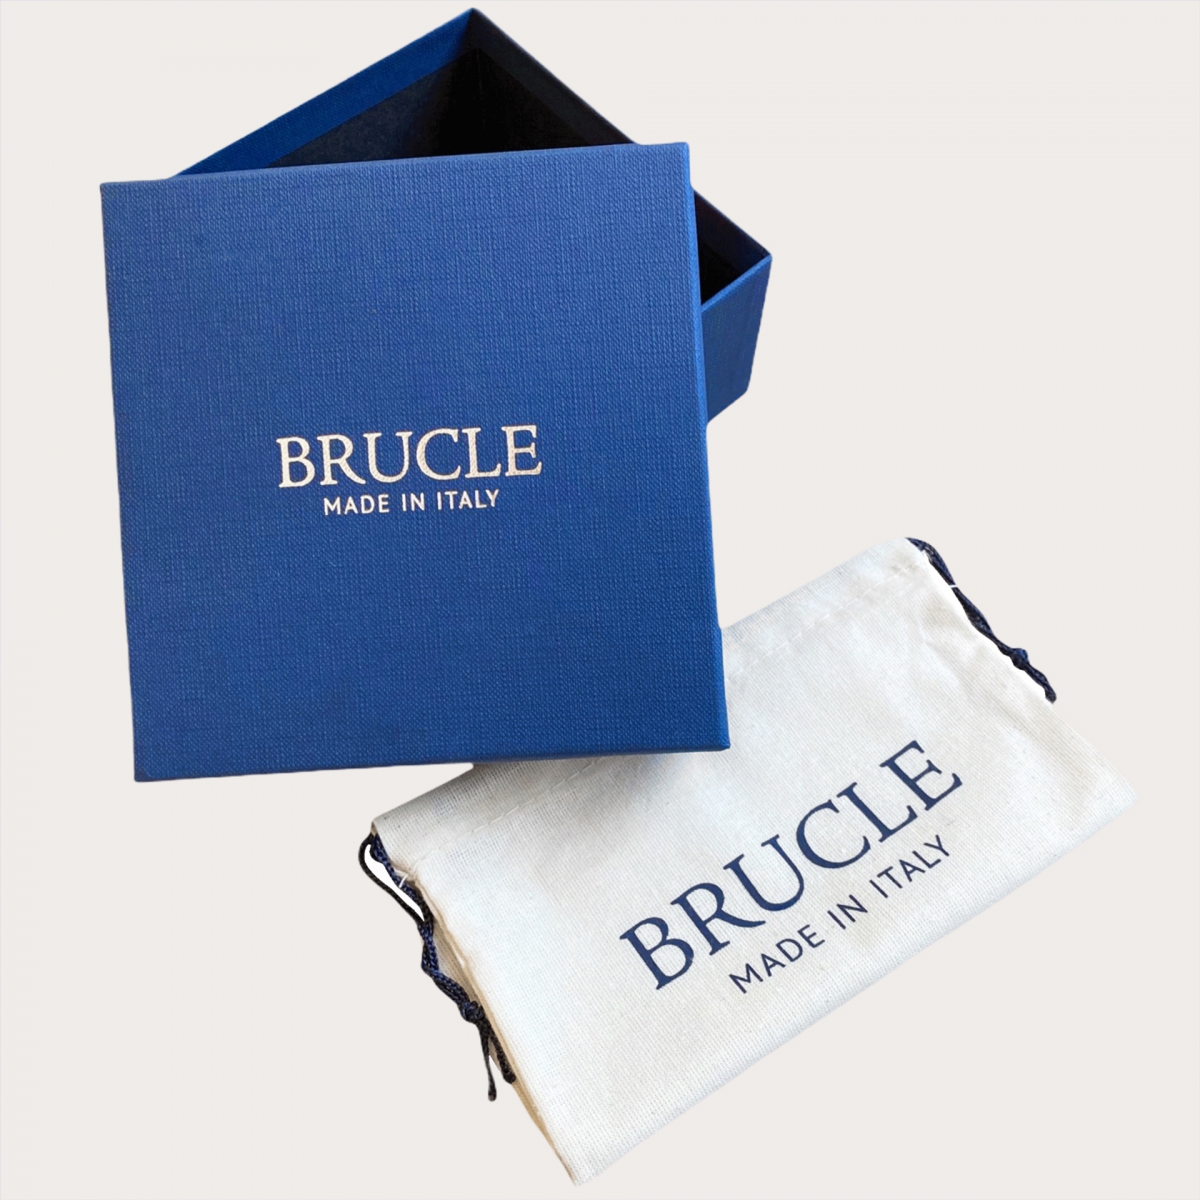 BRUCLE Cintura sottile in pitone lucido fibbia satinata nickel free, color cipria